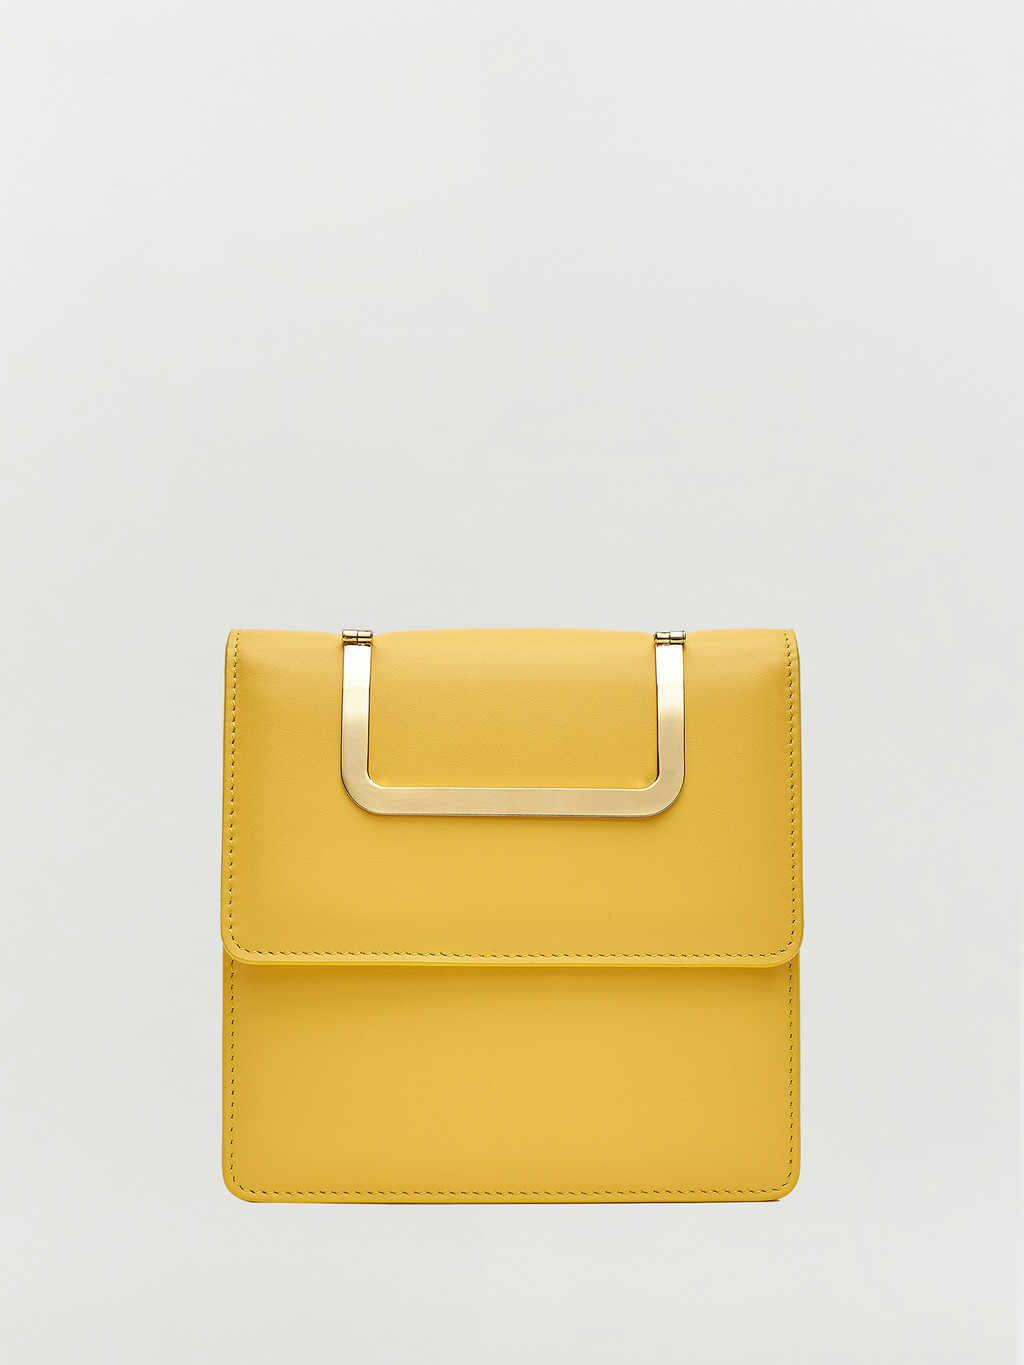 HANDEE Bag - Yellow : EENK SHOP